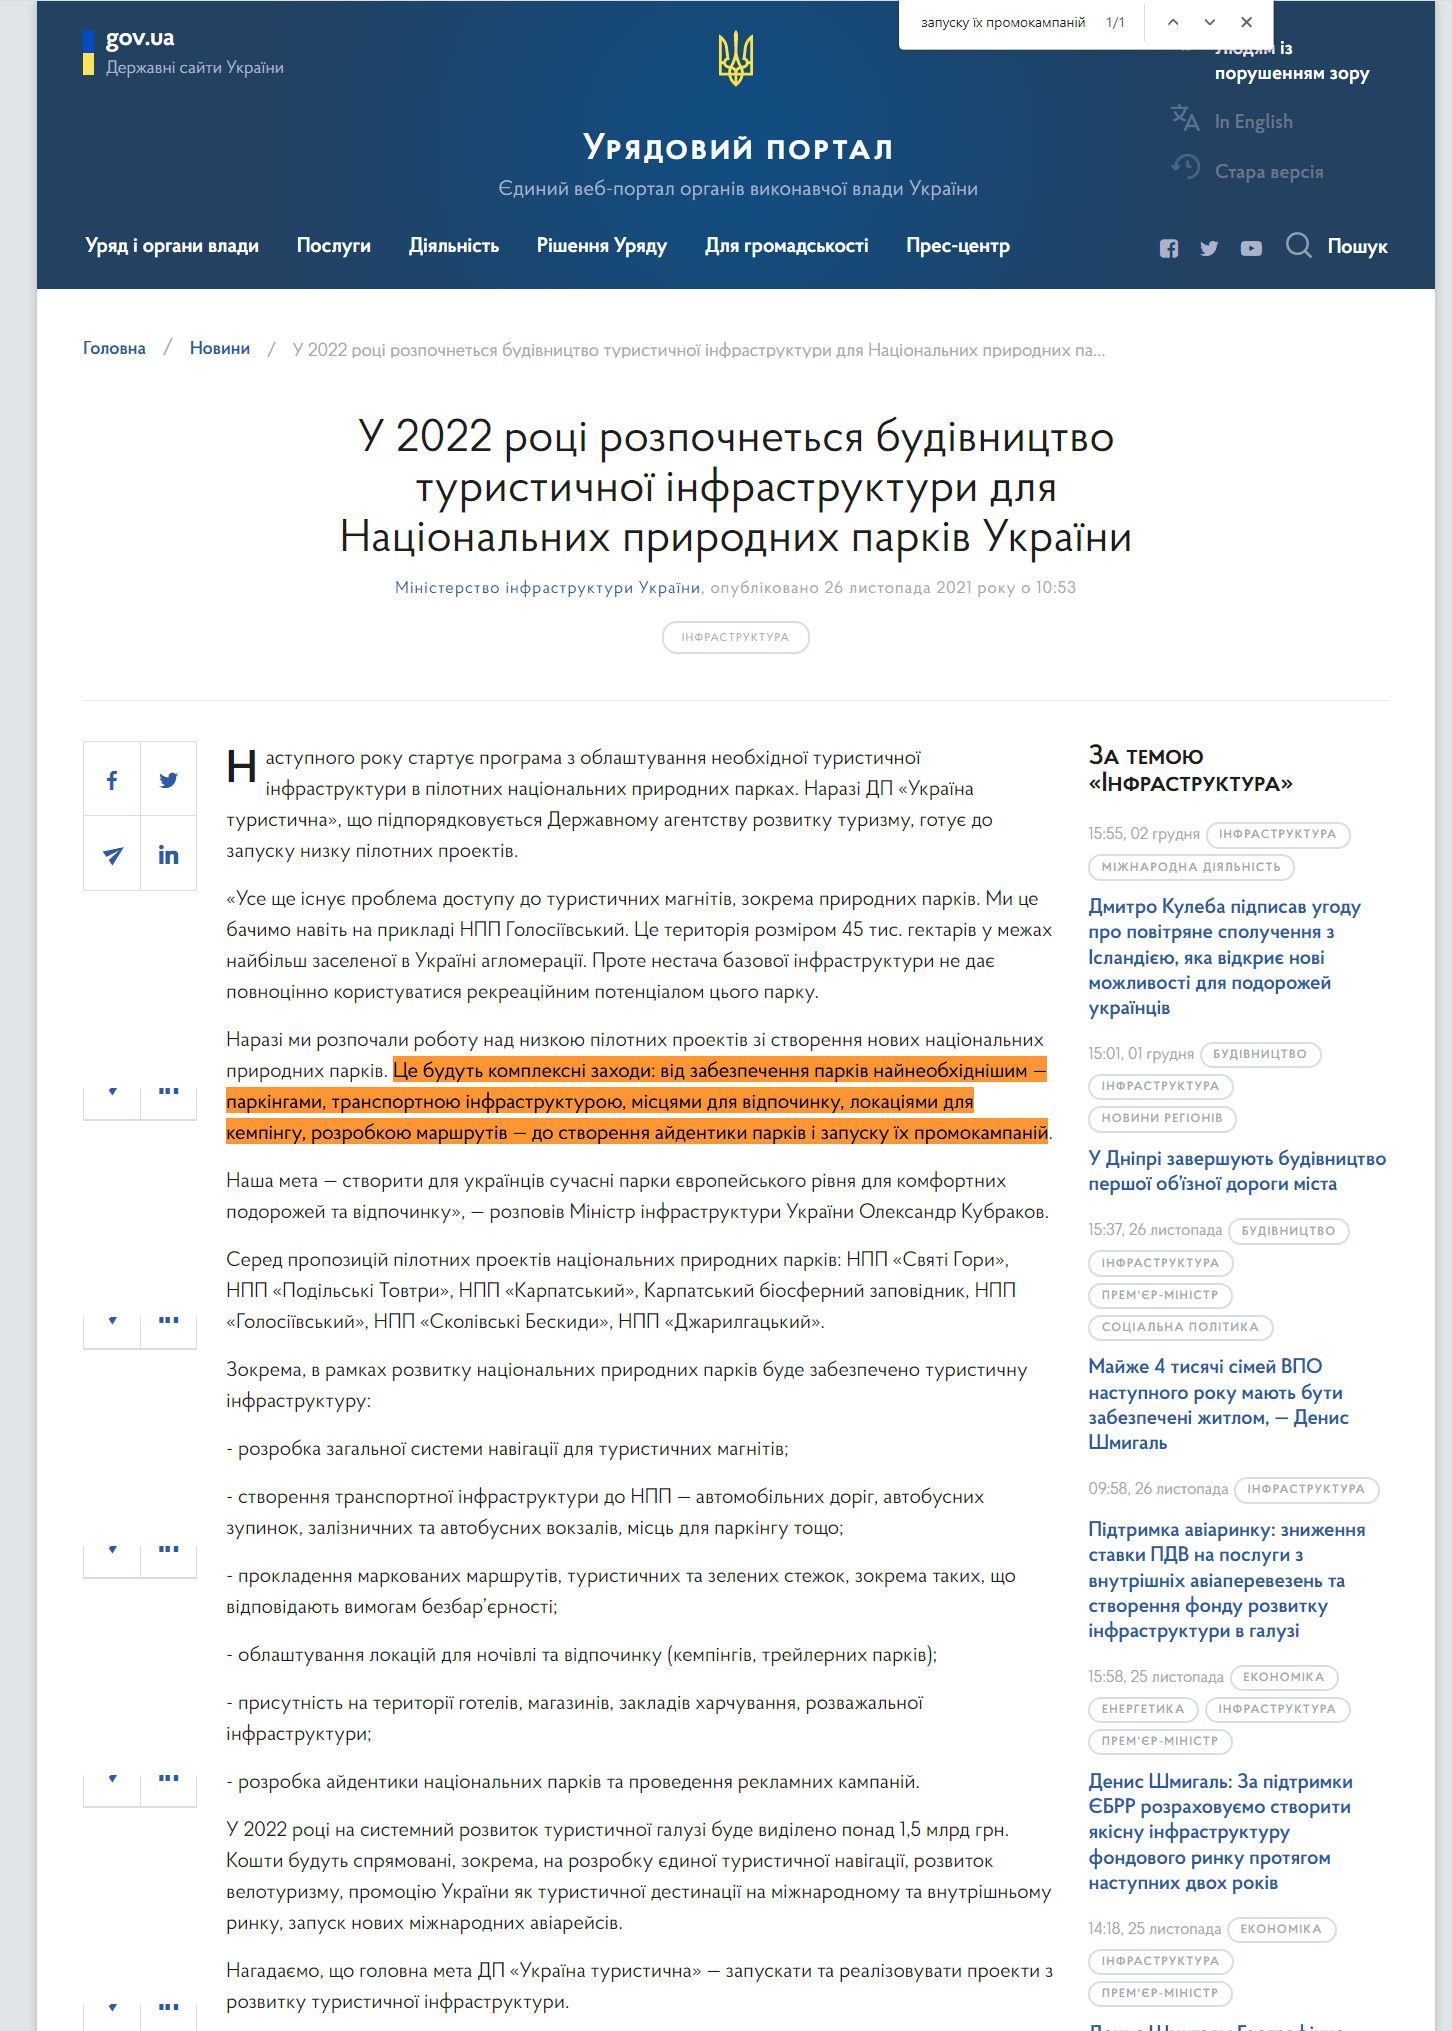 https://www.kmu.gov.ua/news/u-2022-roci-rozpochnetsya-budivnictvo-turistichnoyi-infrastrukturi-dlya-nacionalnih-prirodnih-parkiv-ukrayini